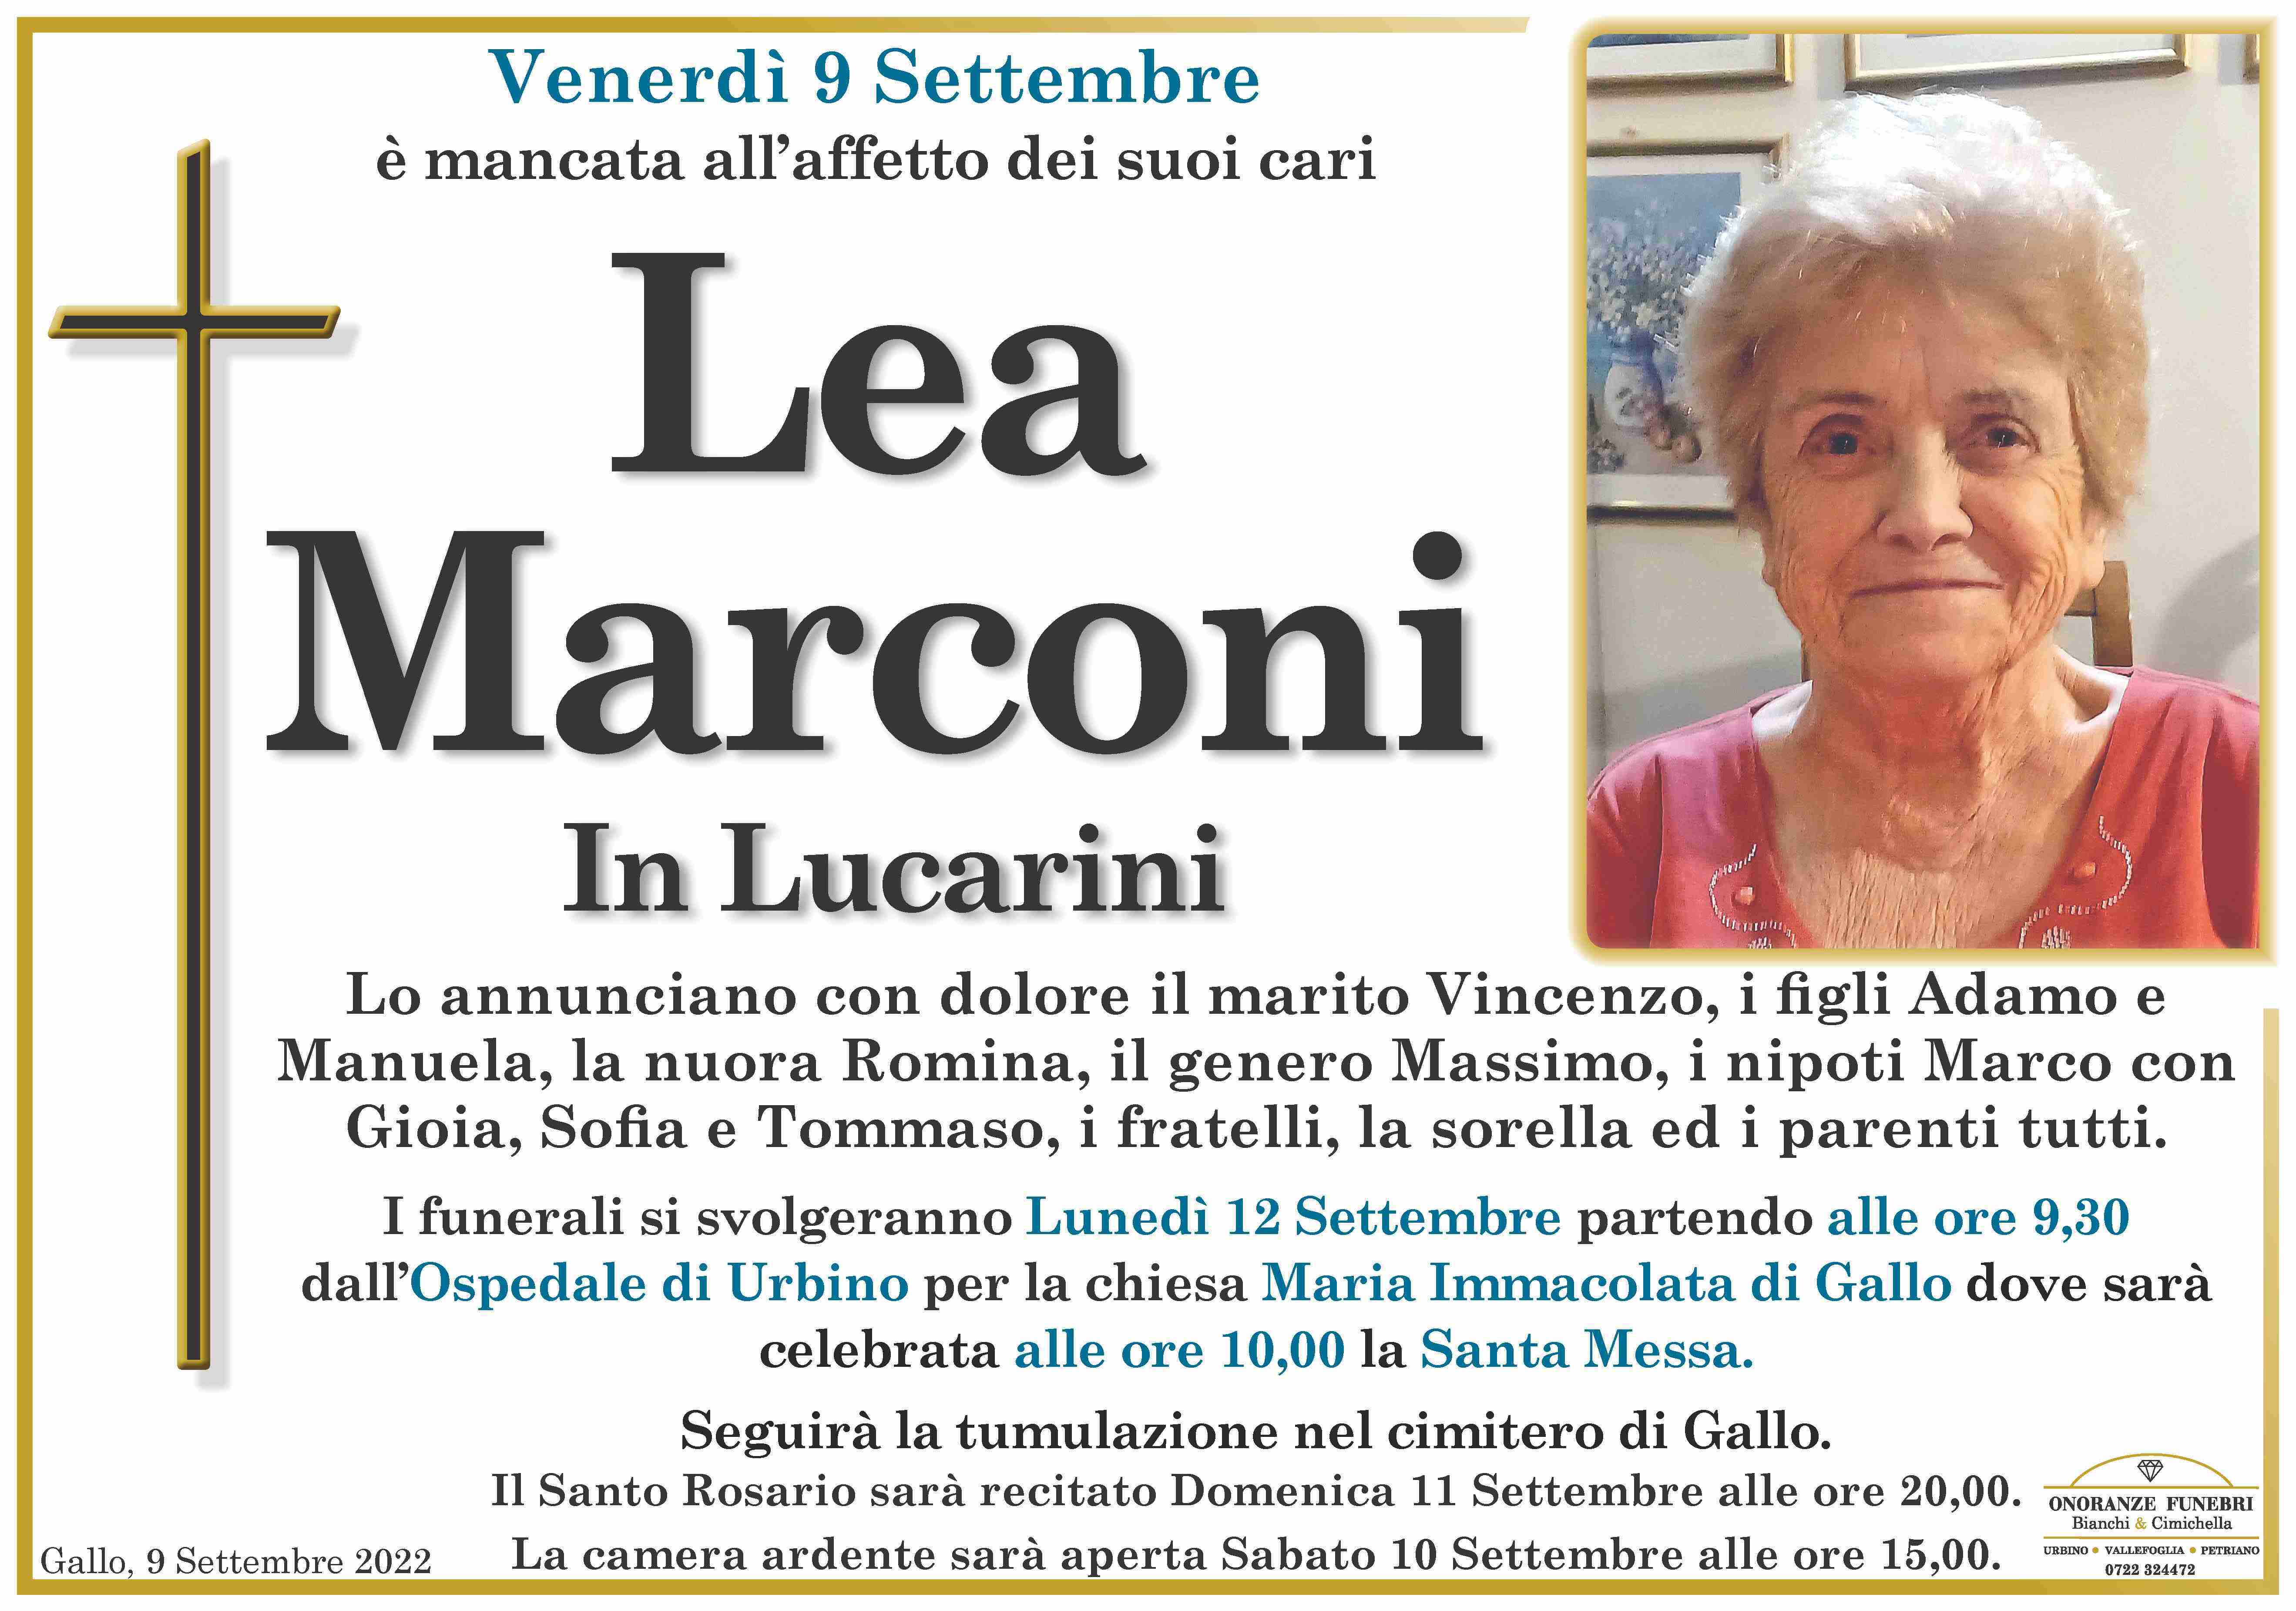 Lea Marconi